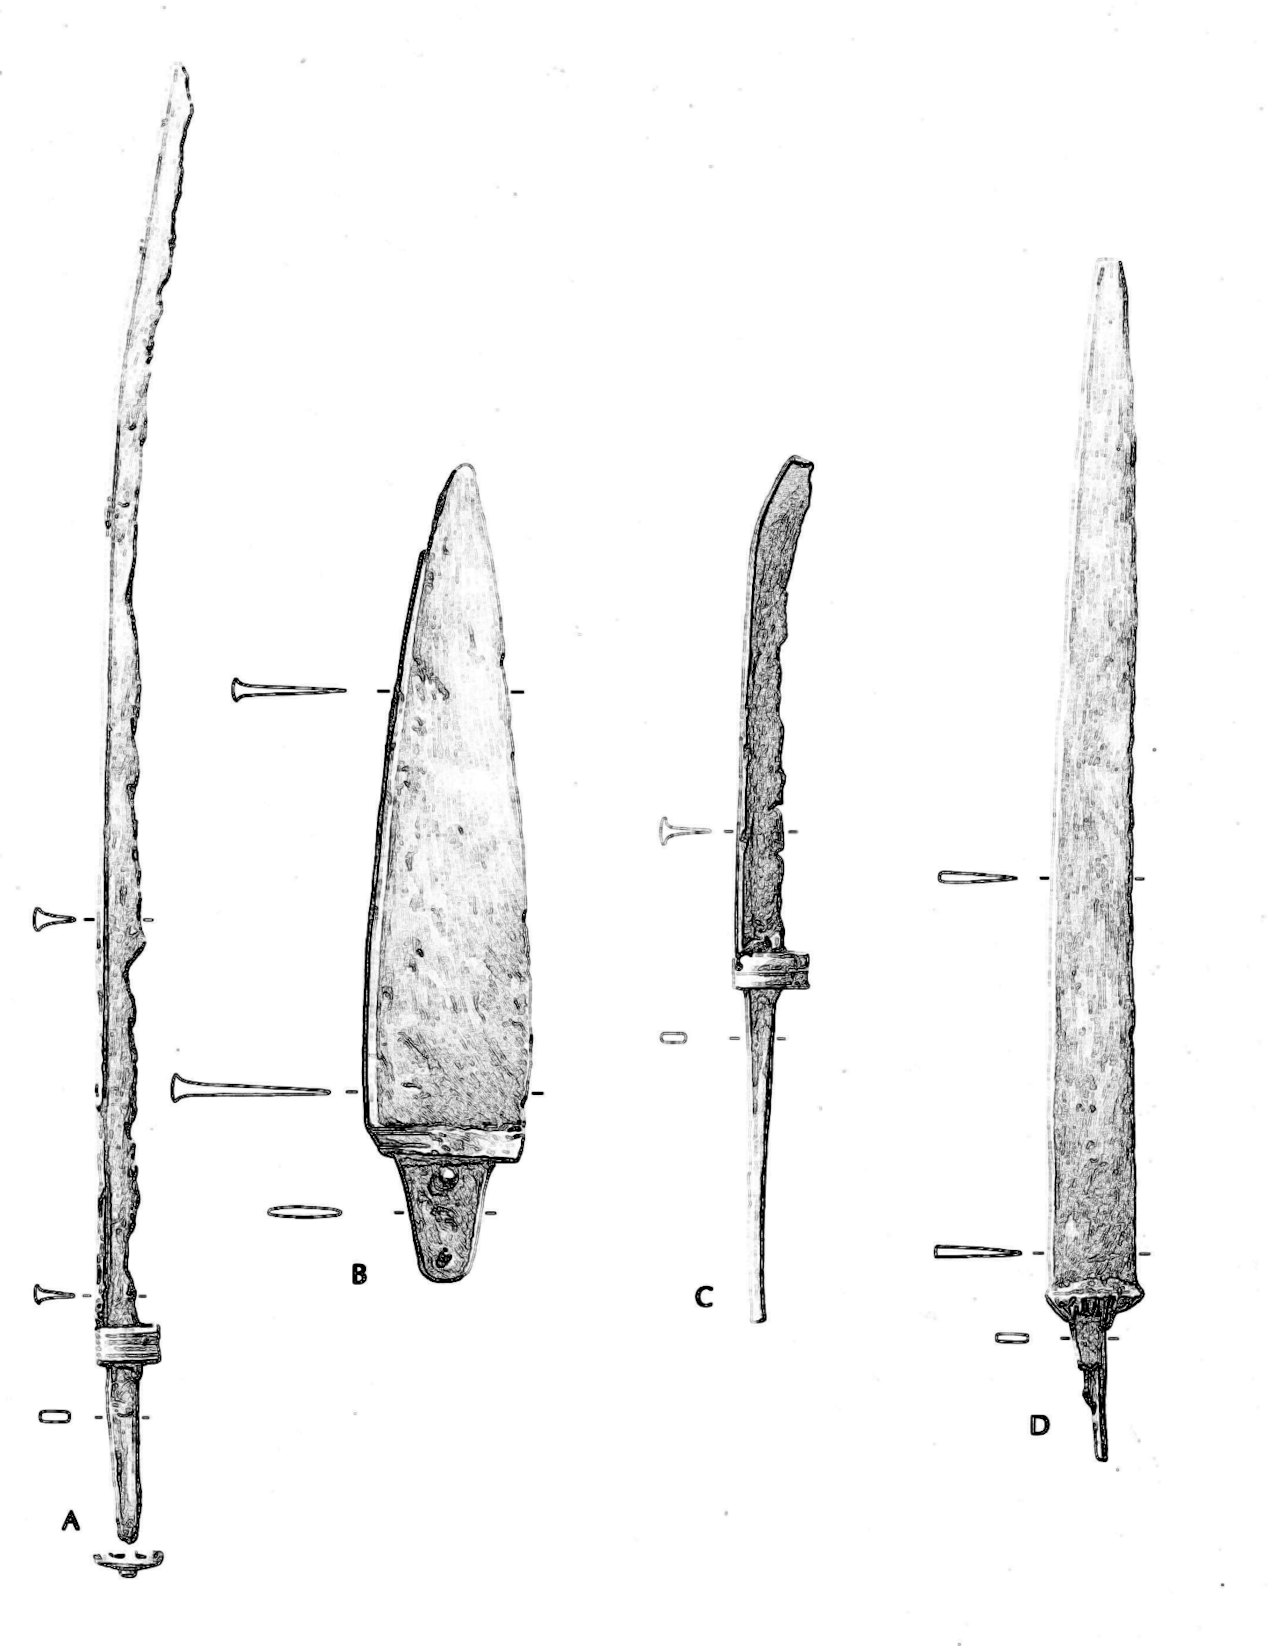 Fire sværd fra Hjortspringfundet.